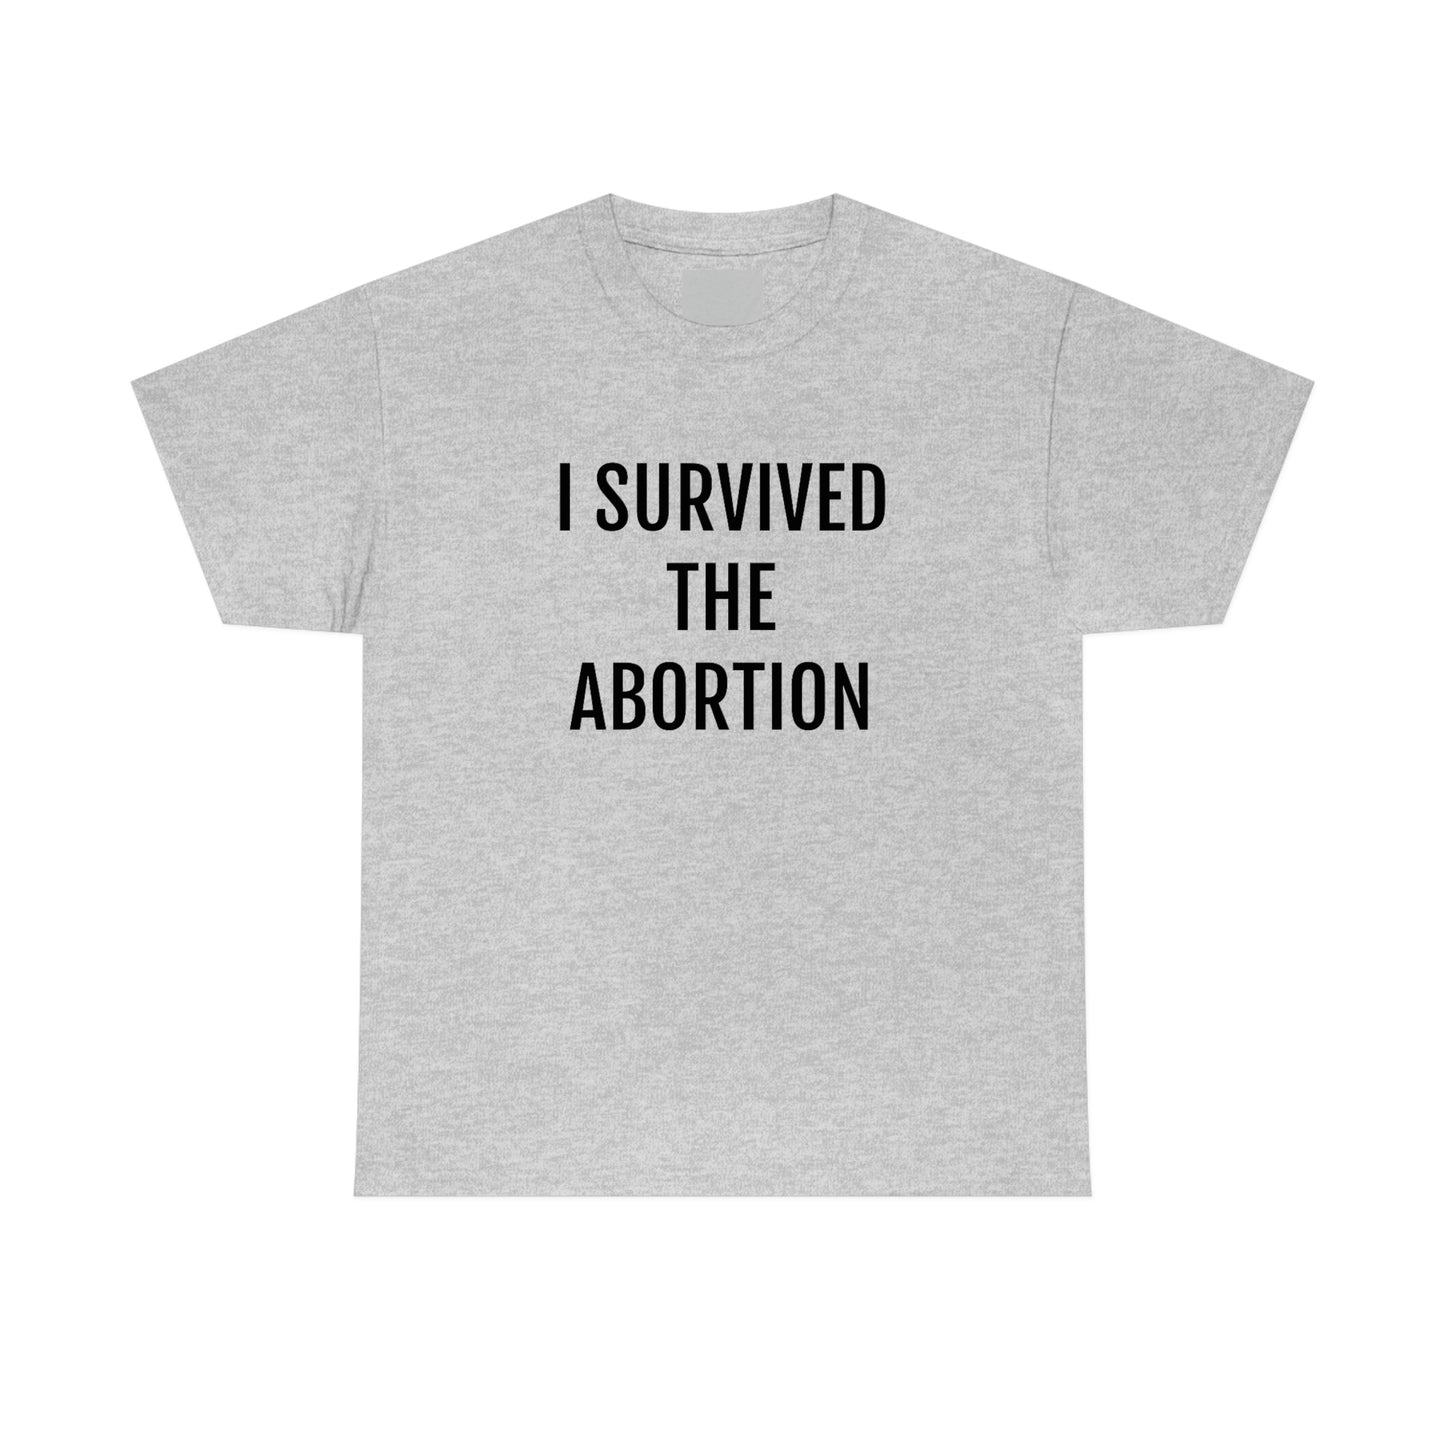 ABORTION SURVIVOR T-SHIRT